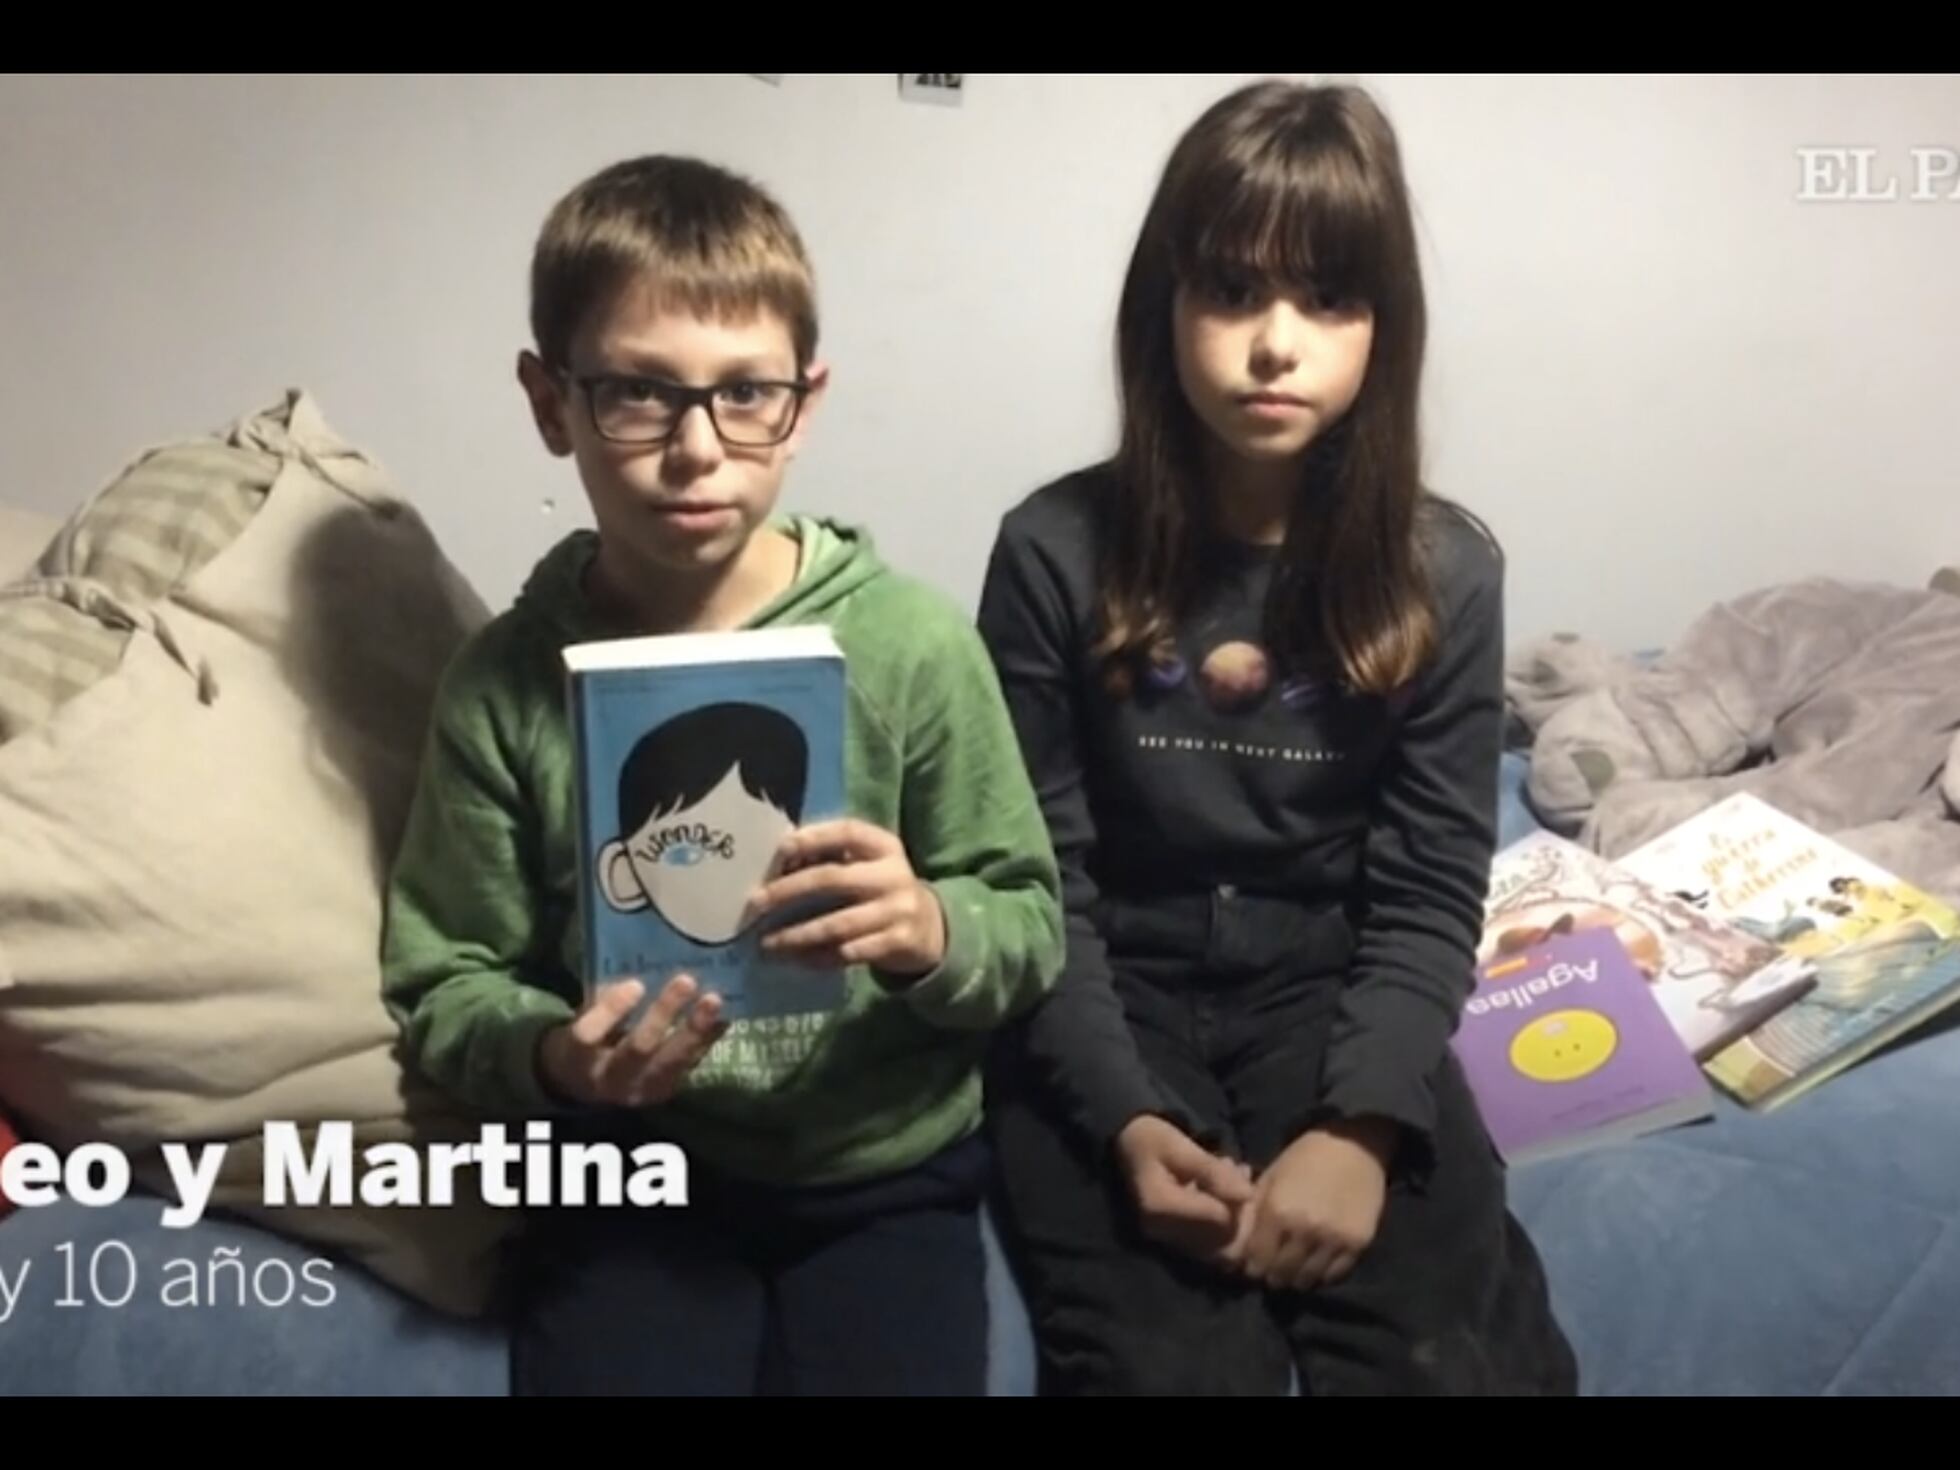 El libro de las letras – libros infantiles Martina Molina